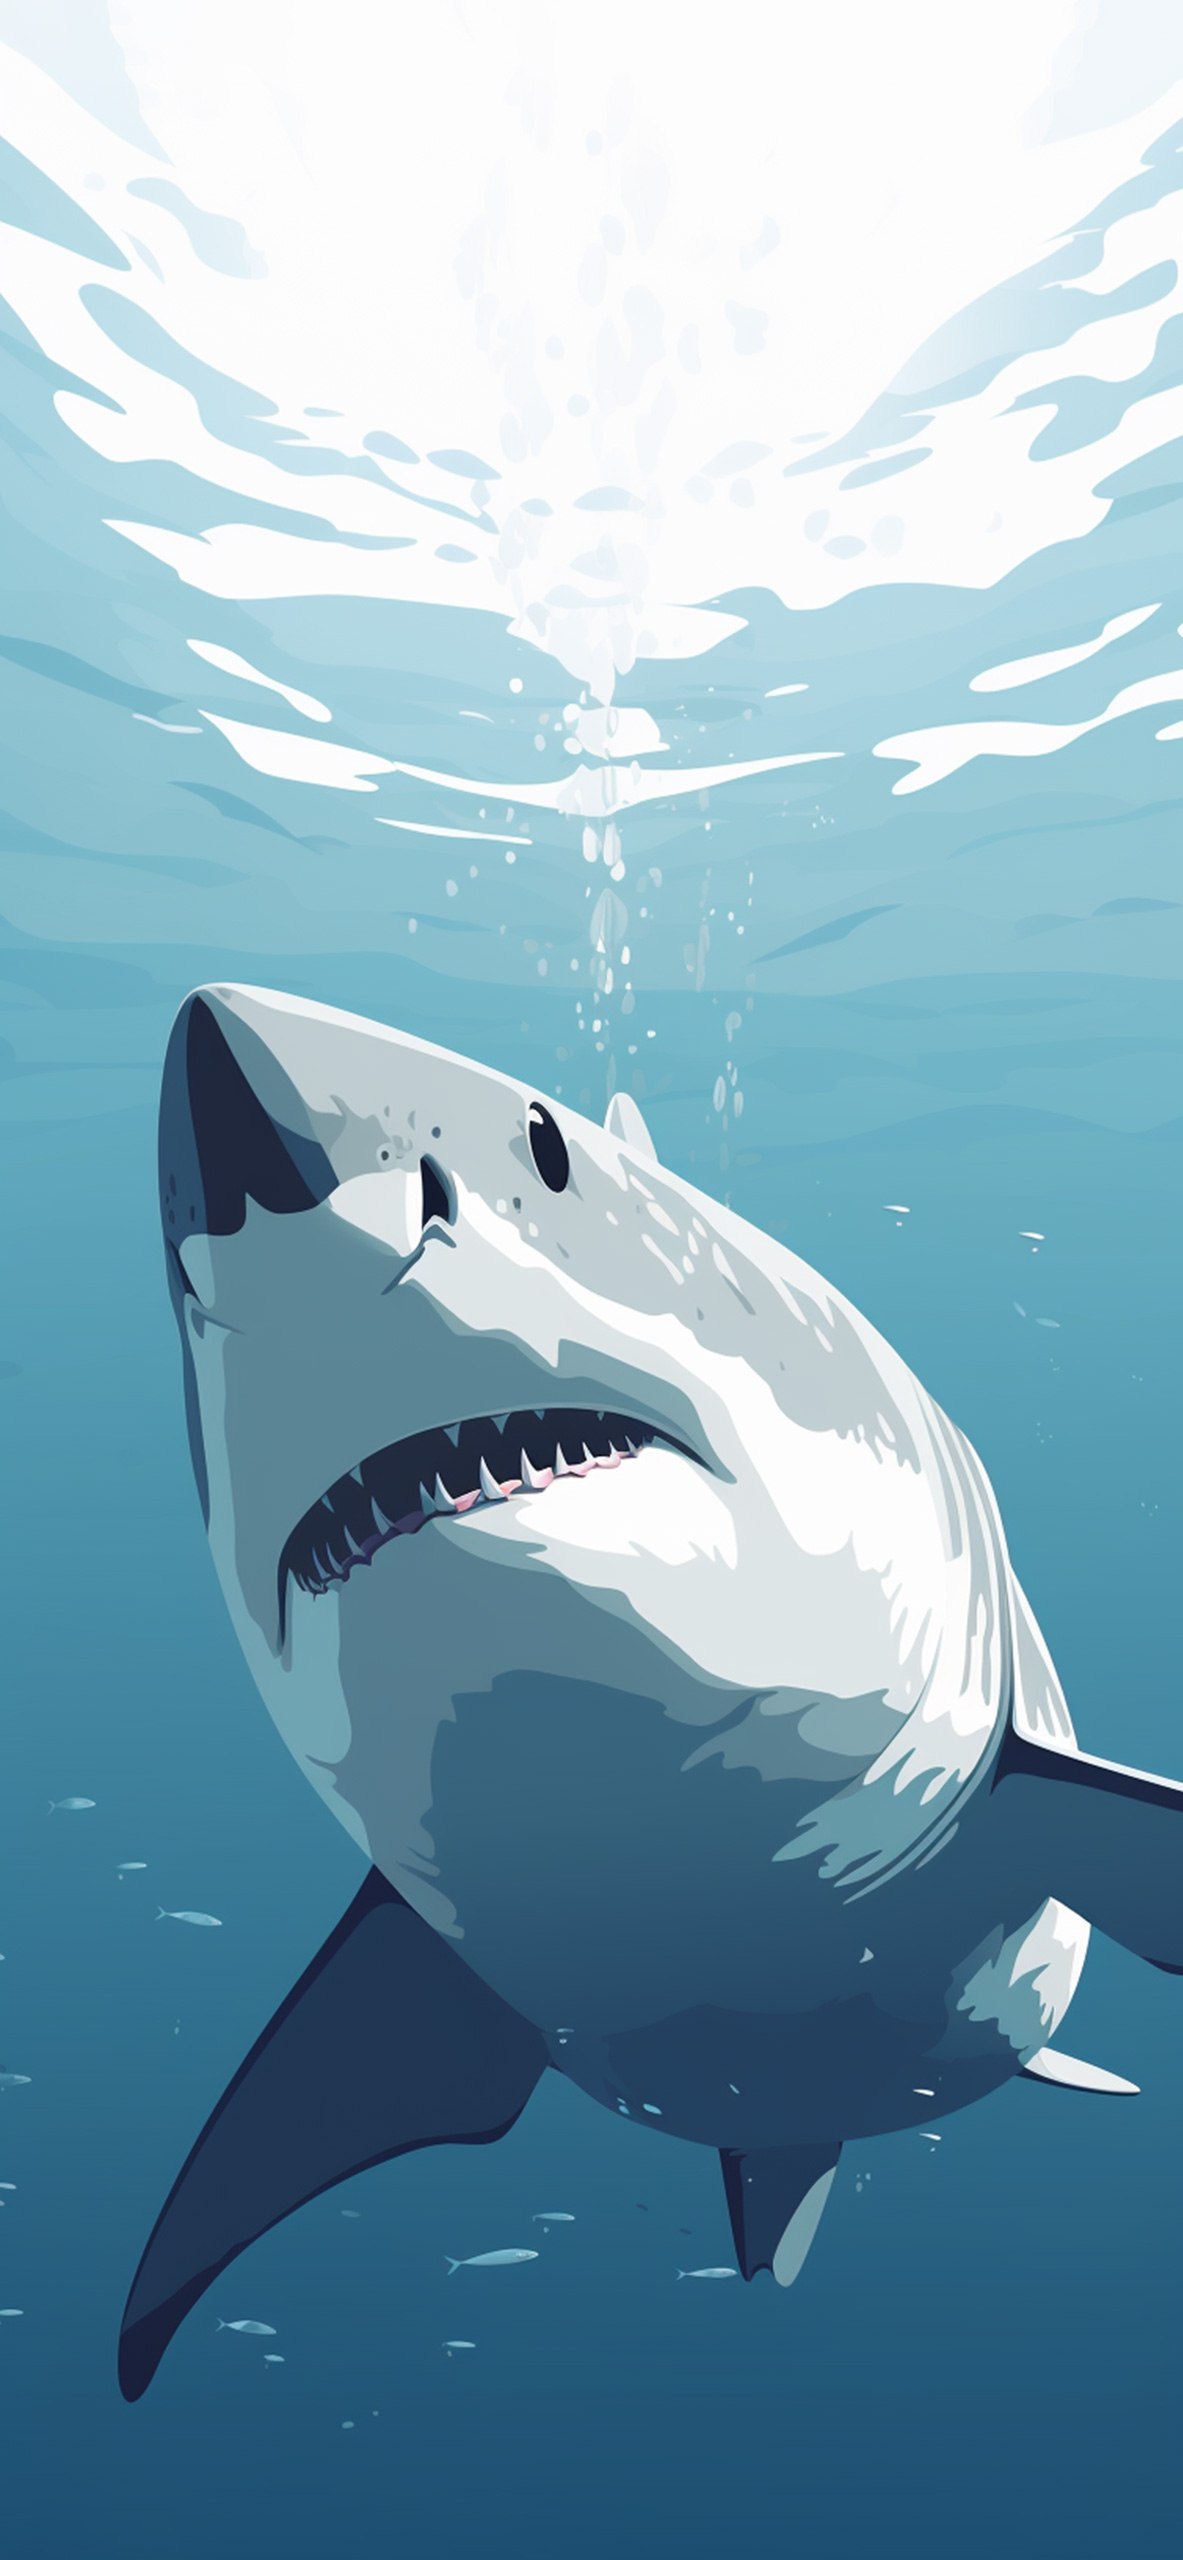 46 iPhone Shark Wallpapers  WallpaperSafari